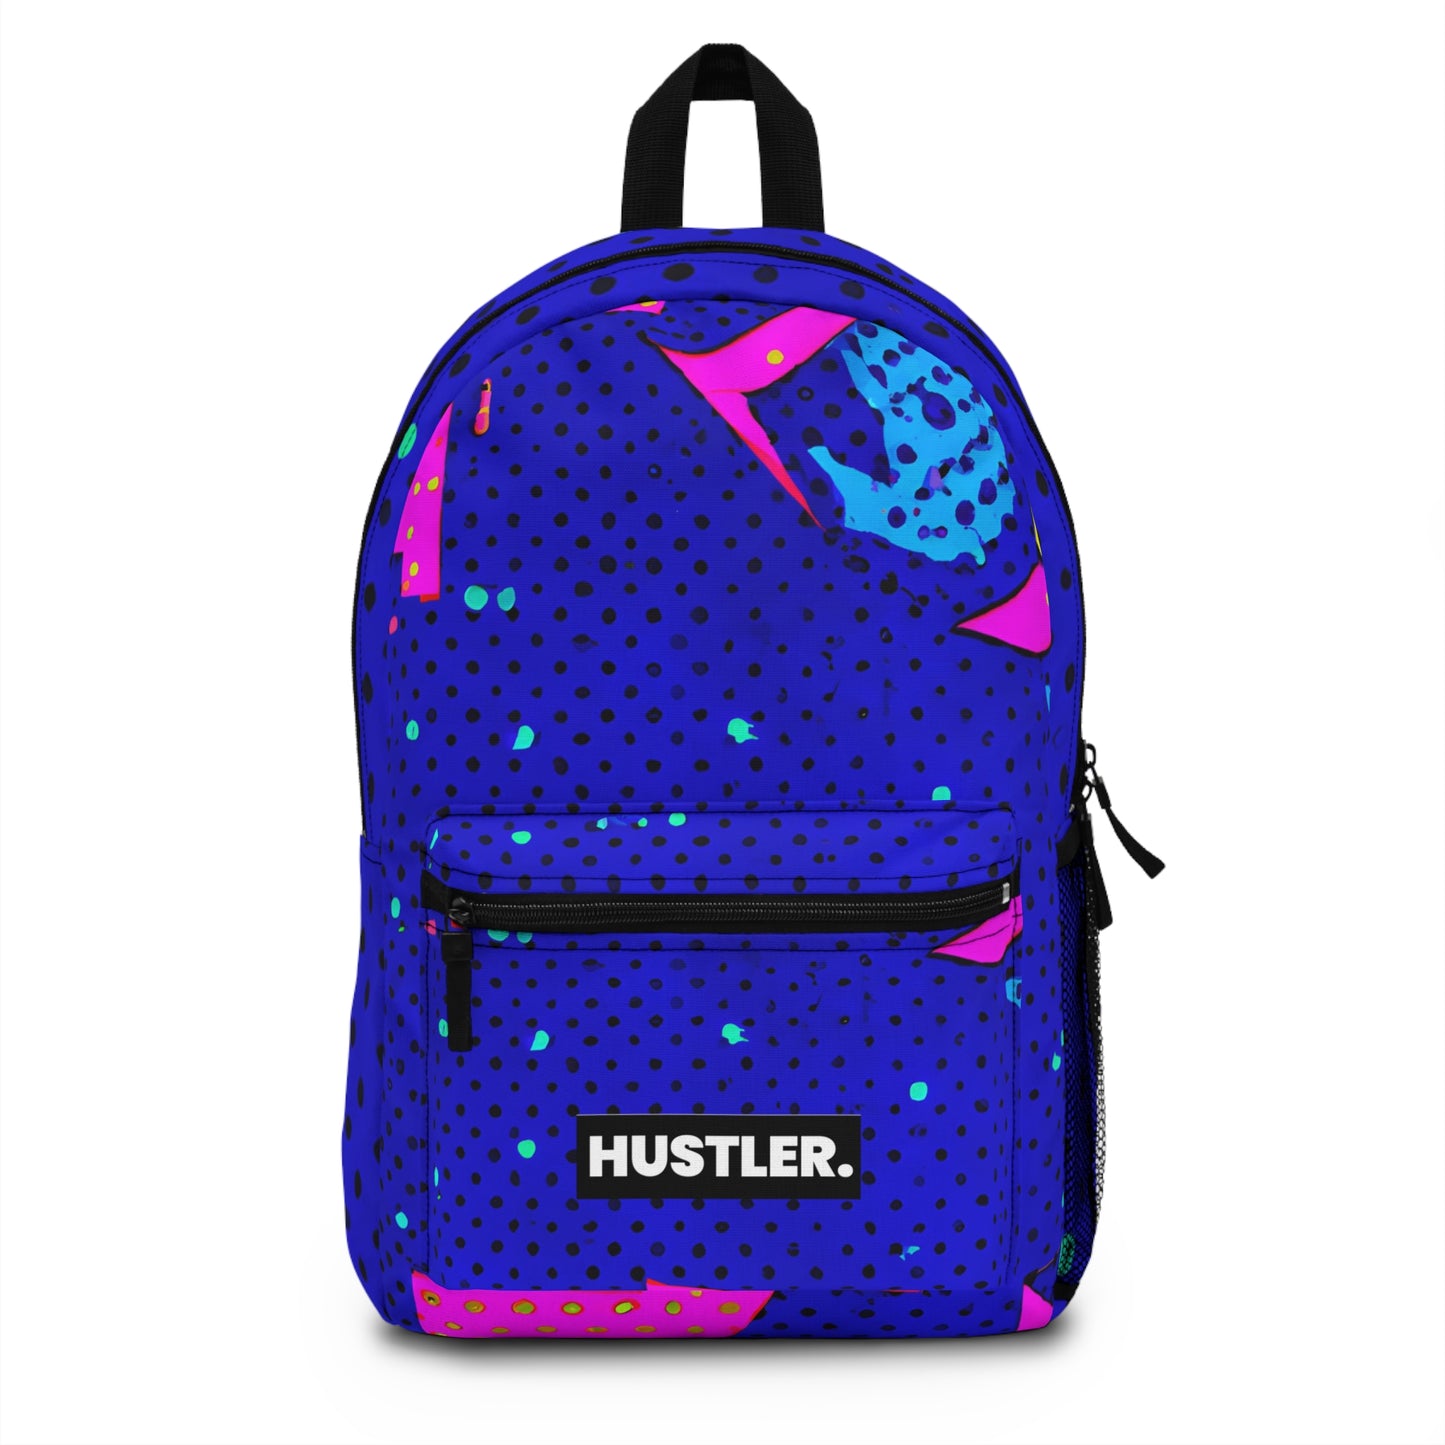 Starr Nebula - Hustler Backpack